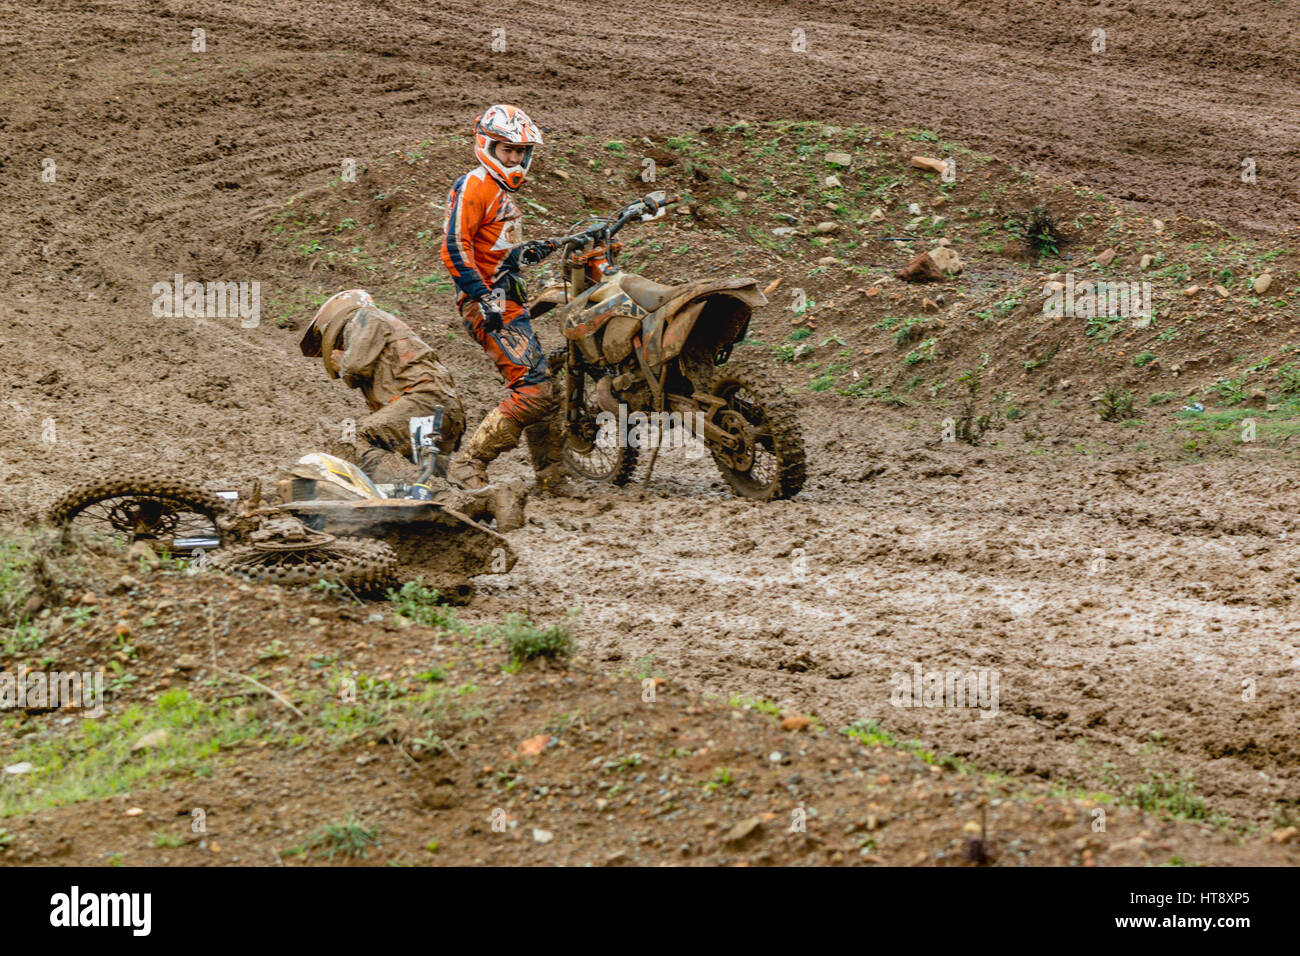 Accident de motocross dans la boue Photo Stock - Alamy